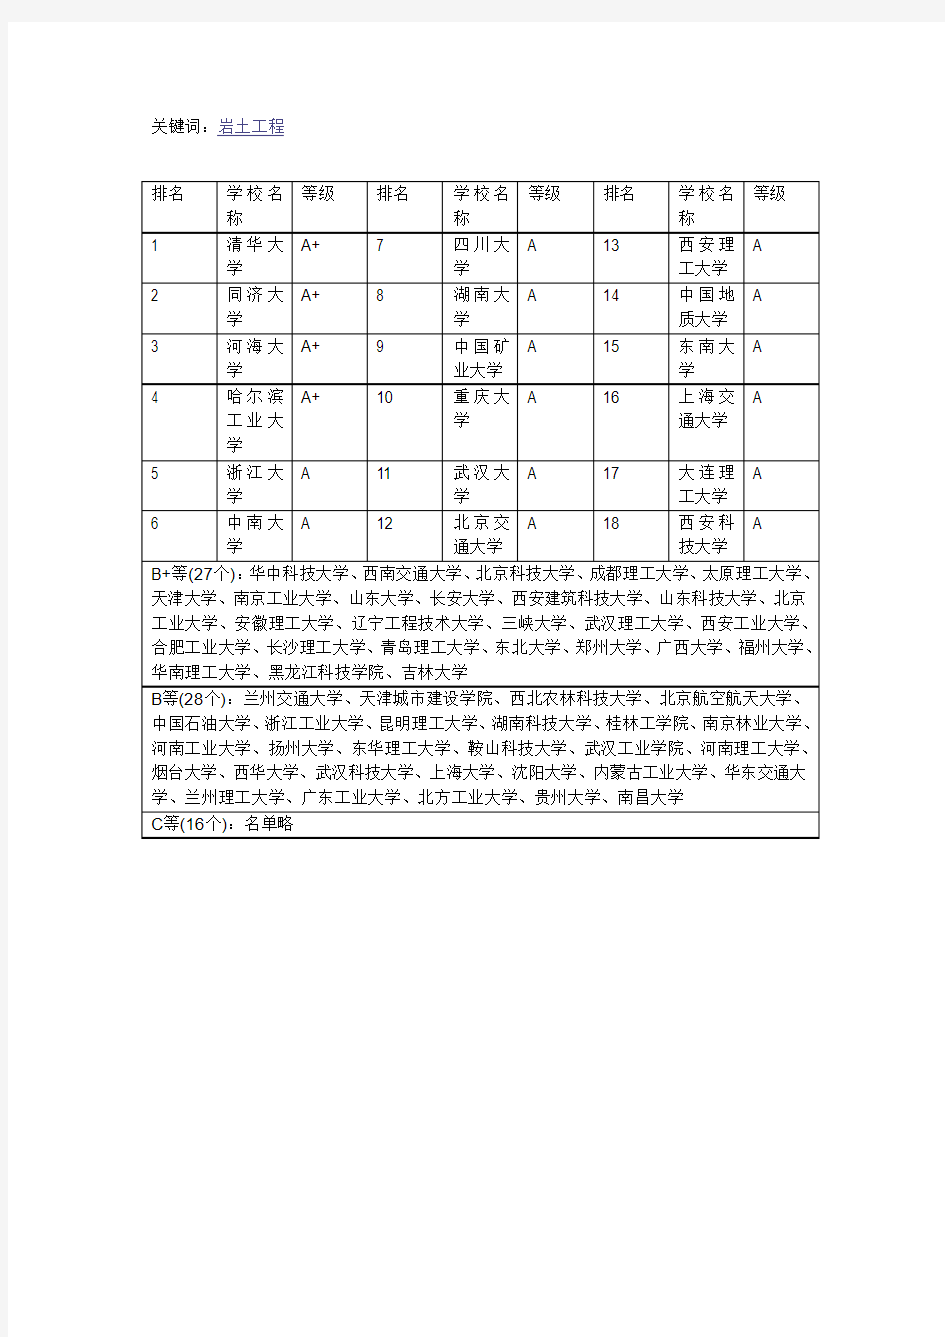 中国高校土木工程专业各方向详细排名(2010)